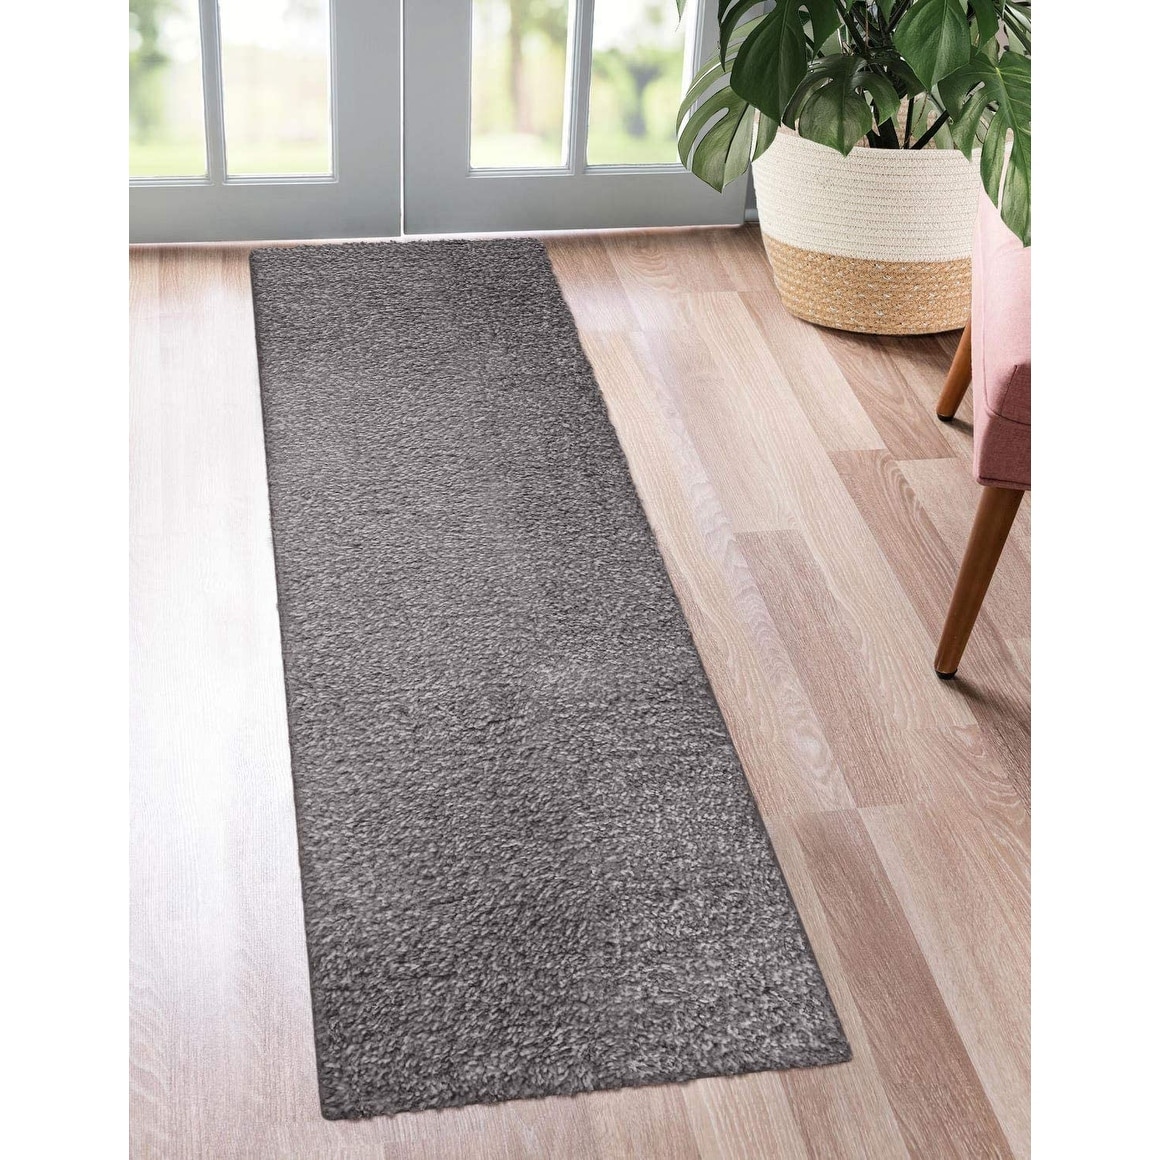 Dark Grey Non Slip Door Mat Durable Washable Hall Runner Dirt Absorbing Doormat 